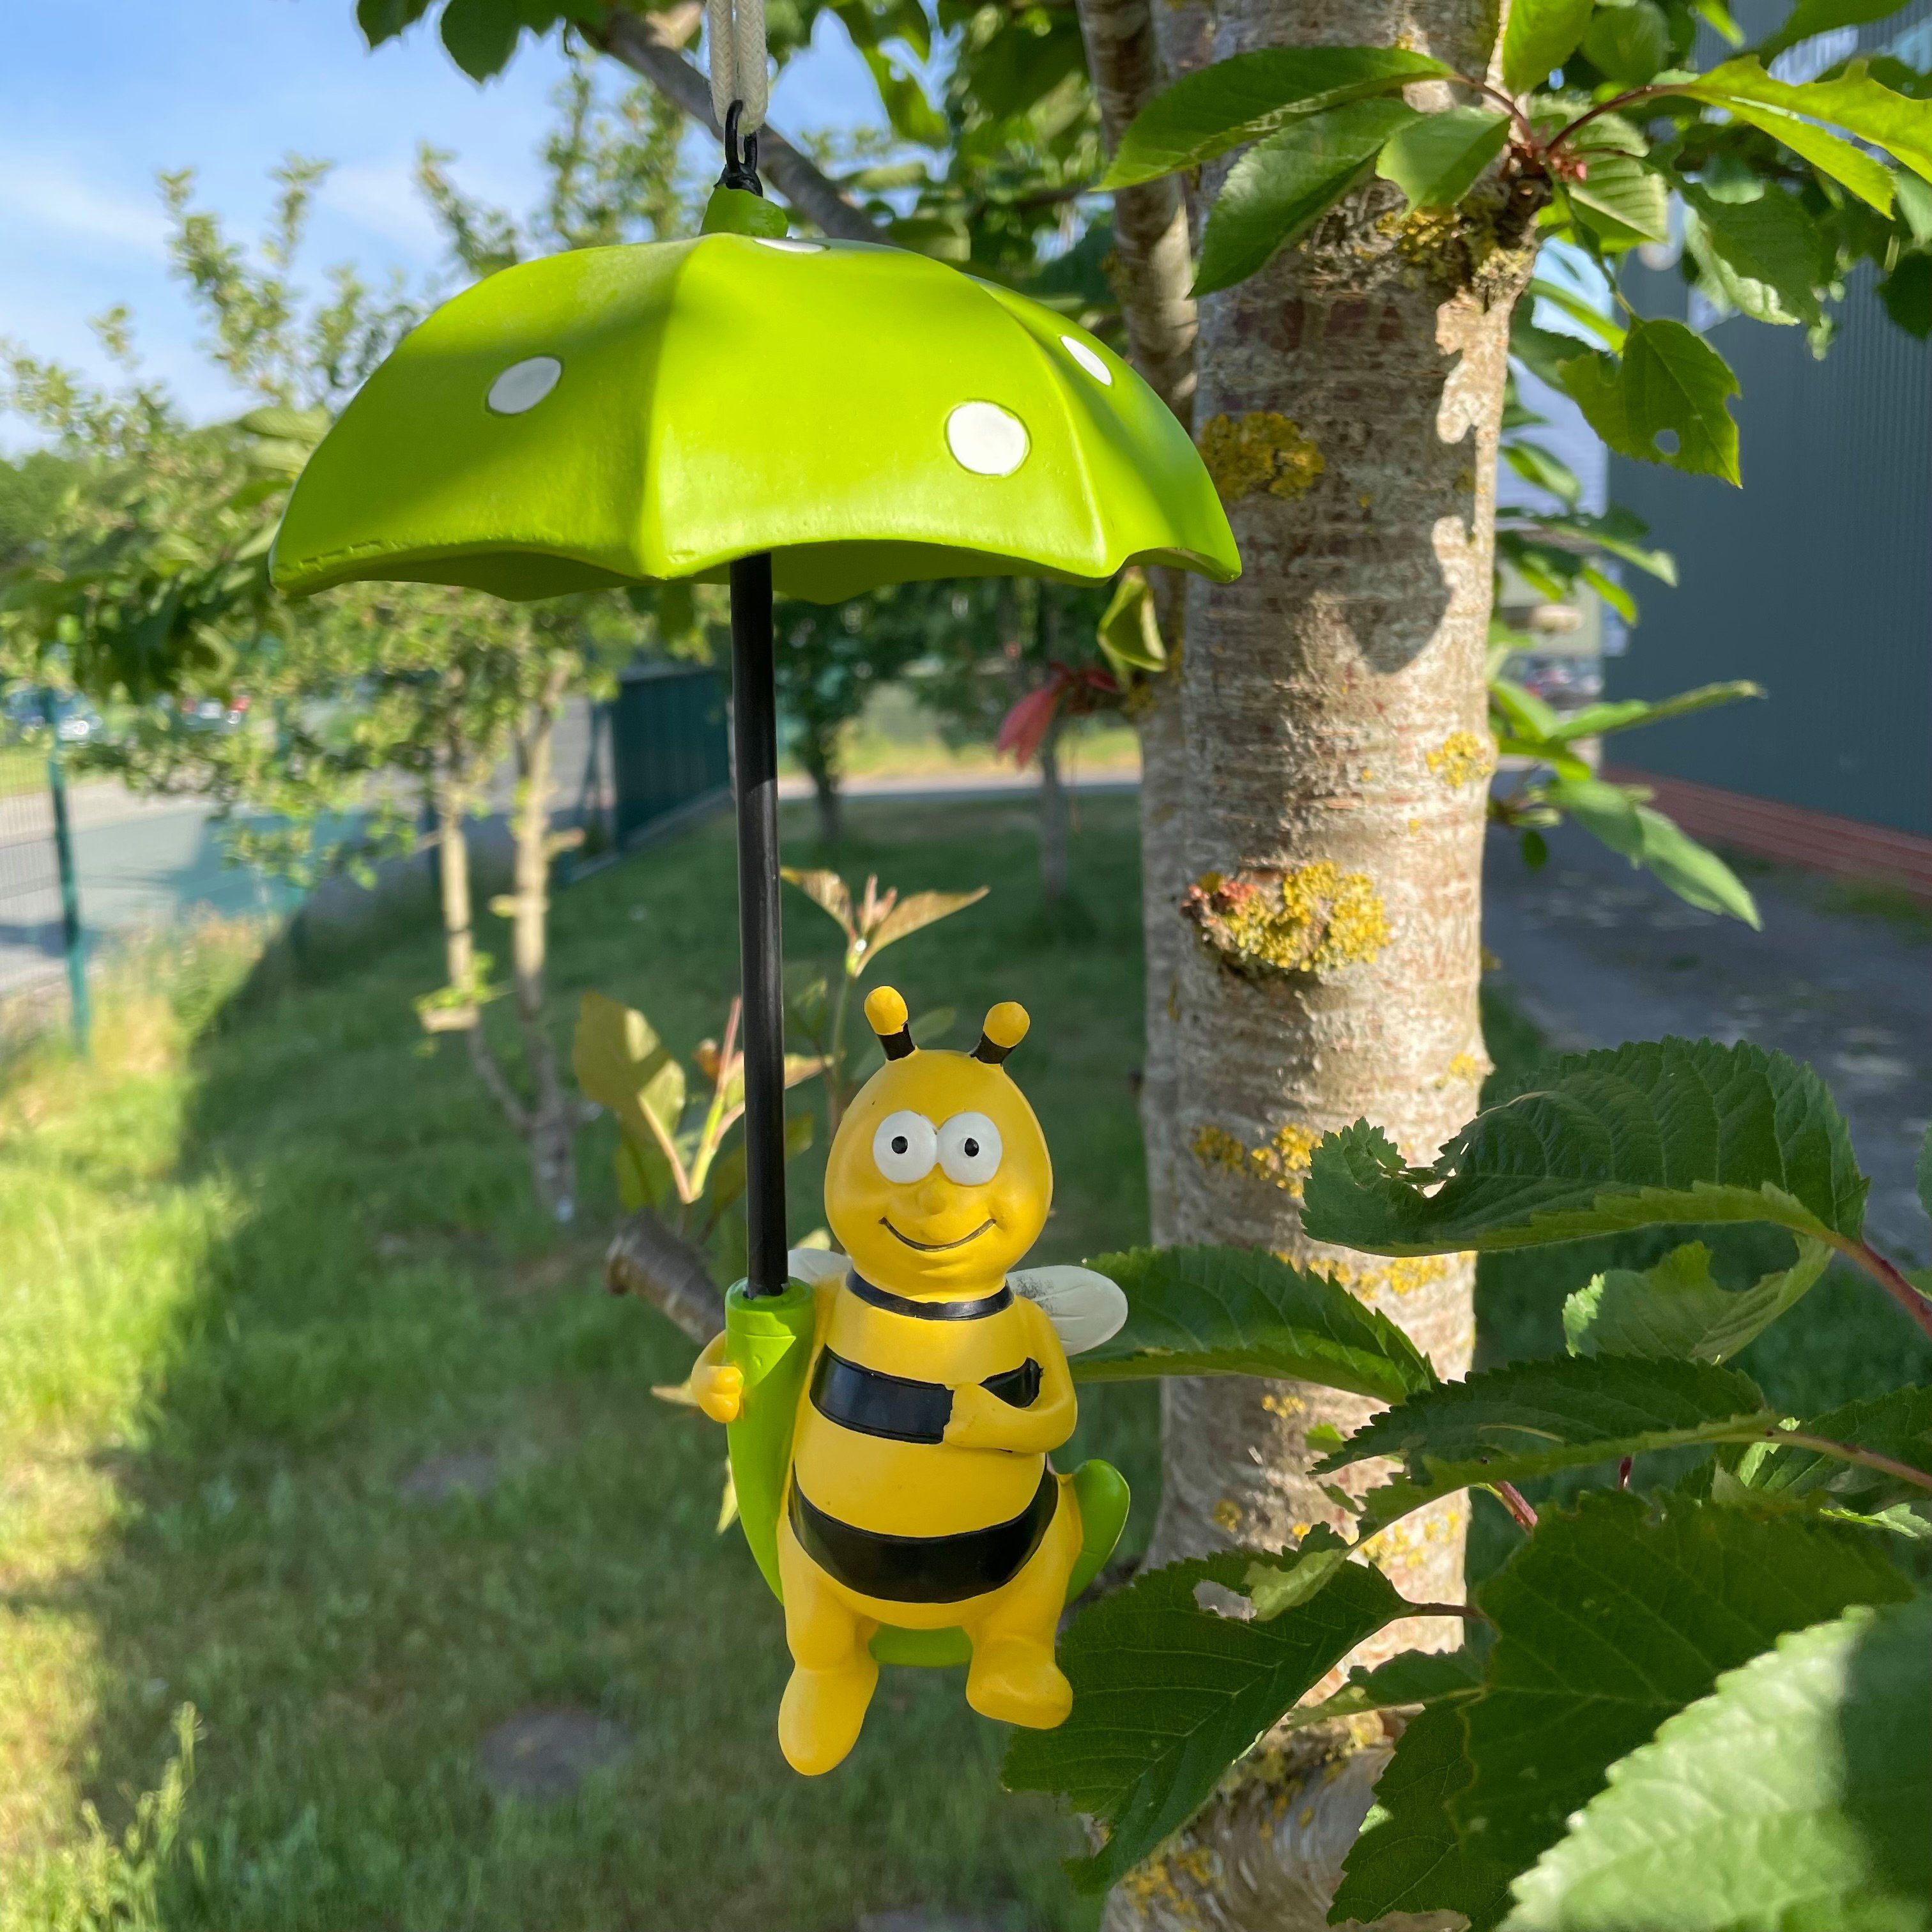 Online-Fuchs Gartenfigur Biene mit Schirm zum Aufhängen im Baum Deko Фігурки тварин, Maße ca. 24 x 14 cm; Biene ca 12 cm hoch witterungsbeständig